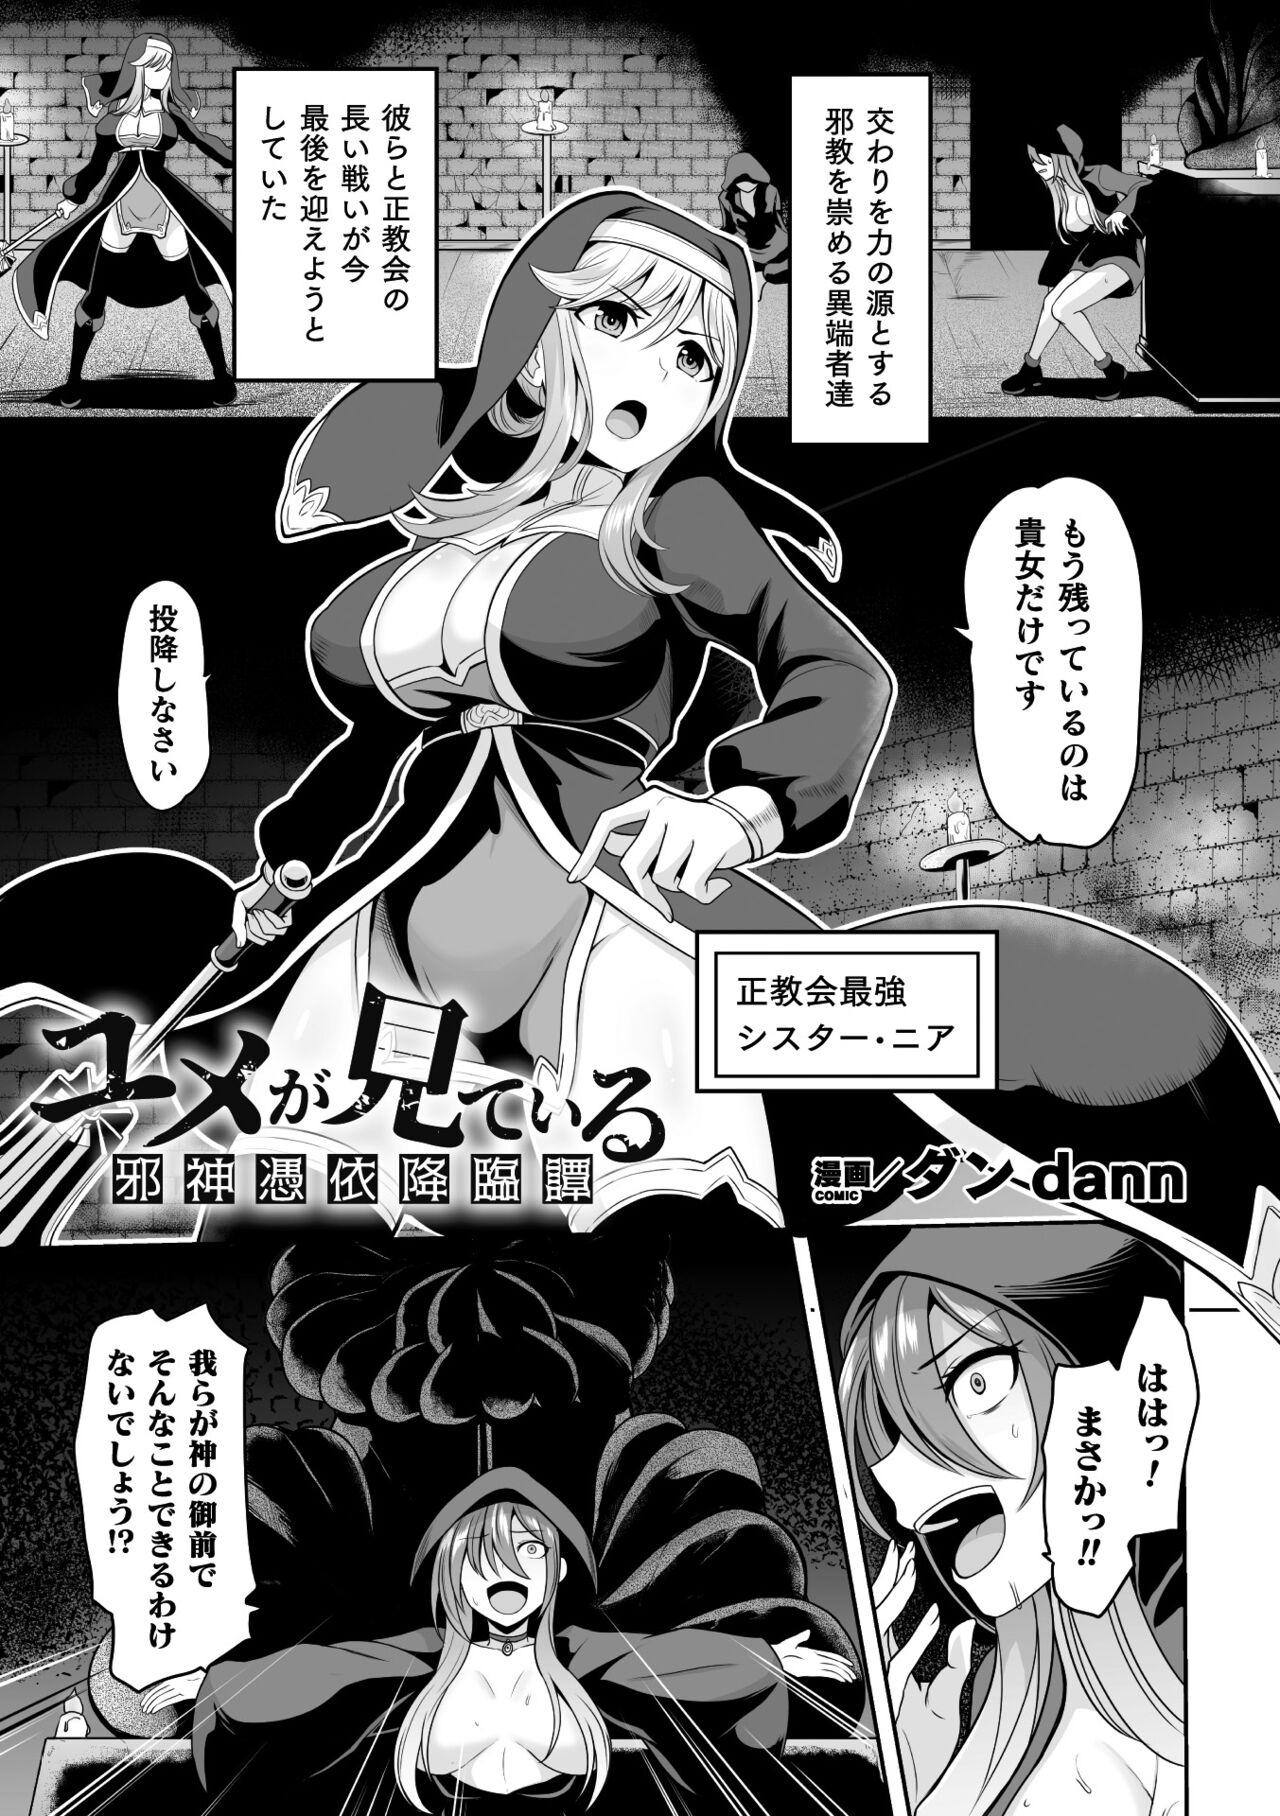 Oldman 2D Comic Magazine Hyoui de! Saimin de! Heroine Inranka Daisakusen Vol. 2 Consolo - Page 3